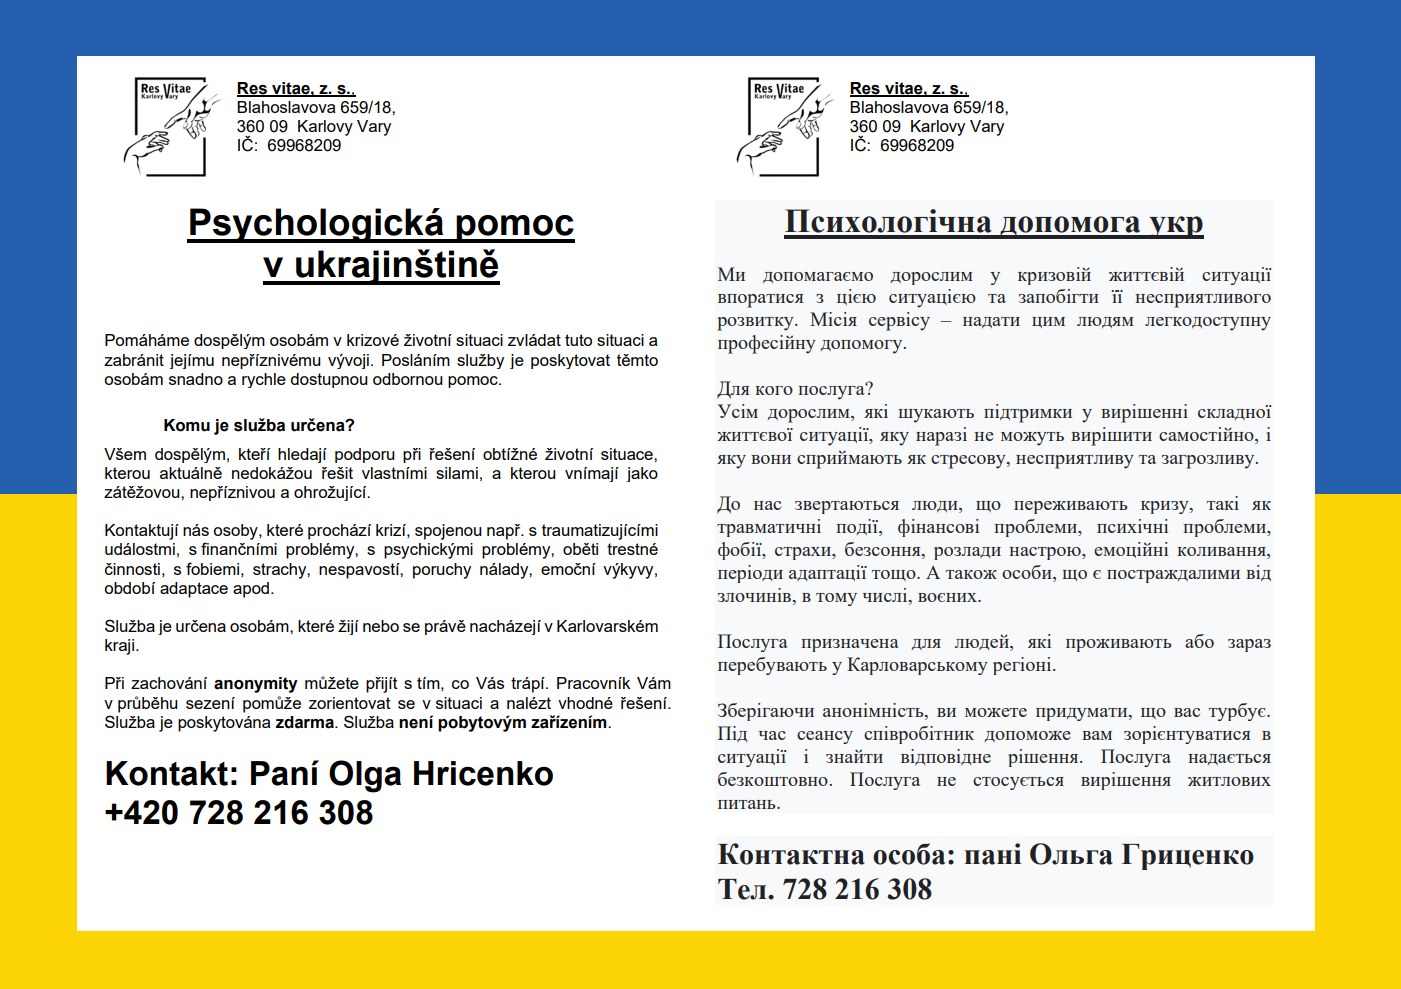 Psychologická pomoc v ukrajinštině